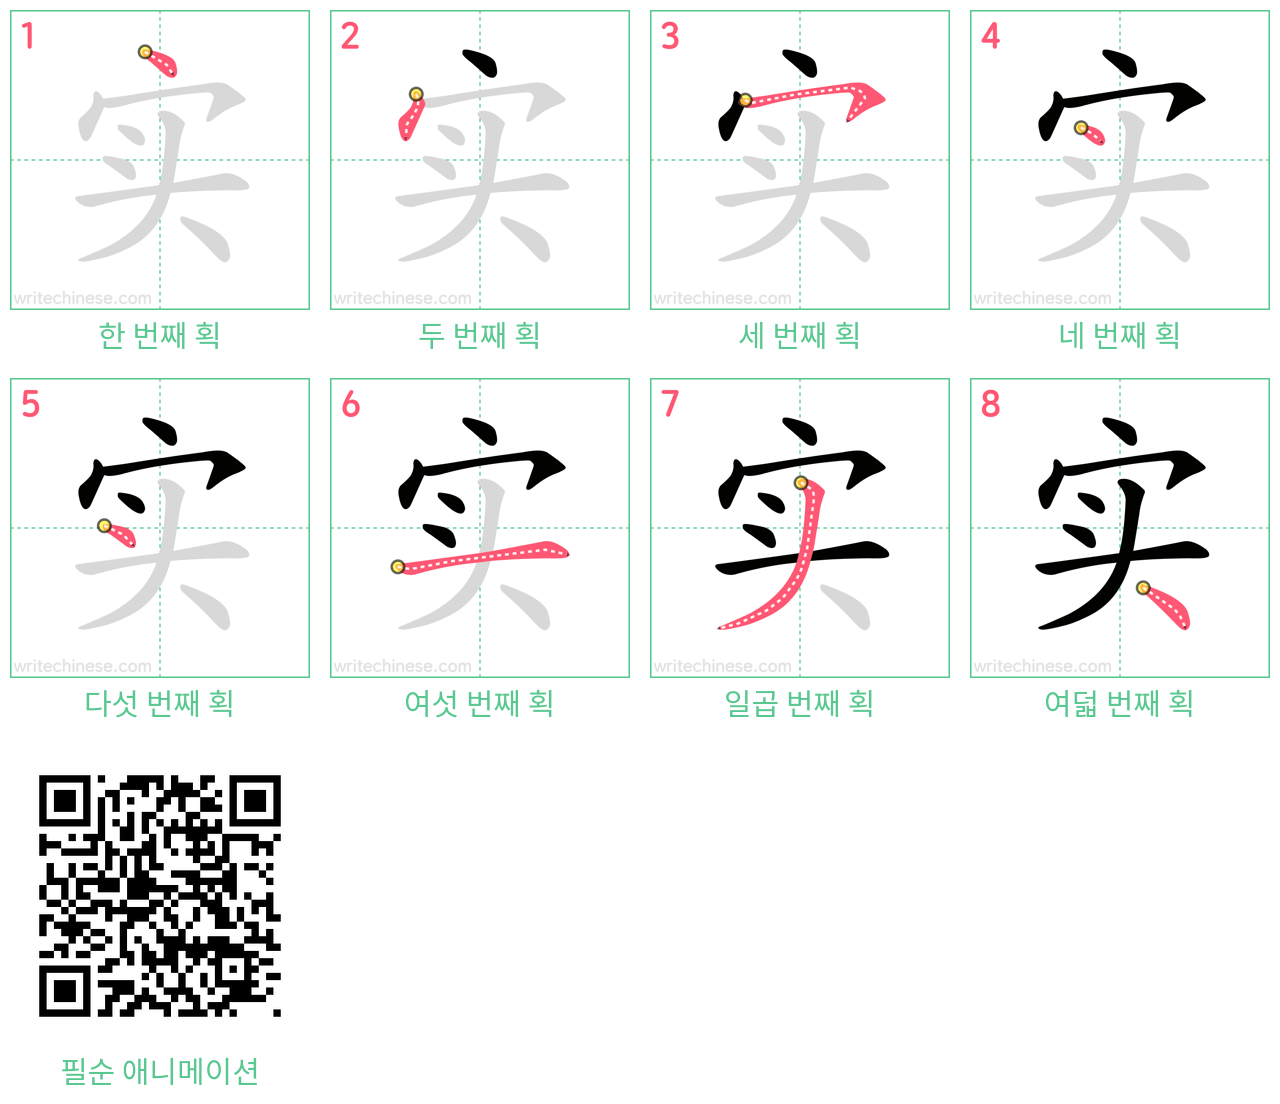 实 step-by-step stroke order diagrams